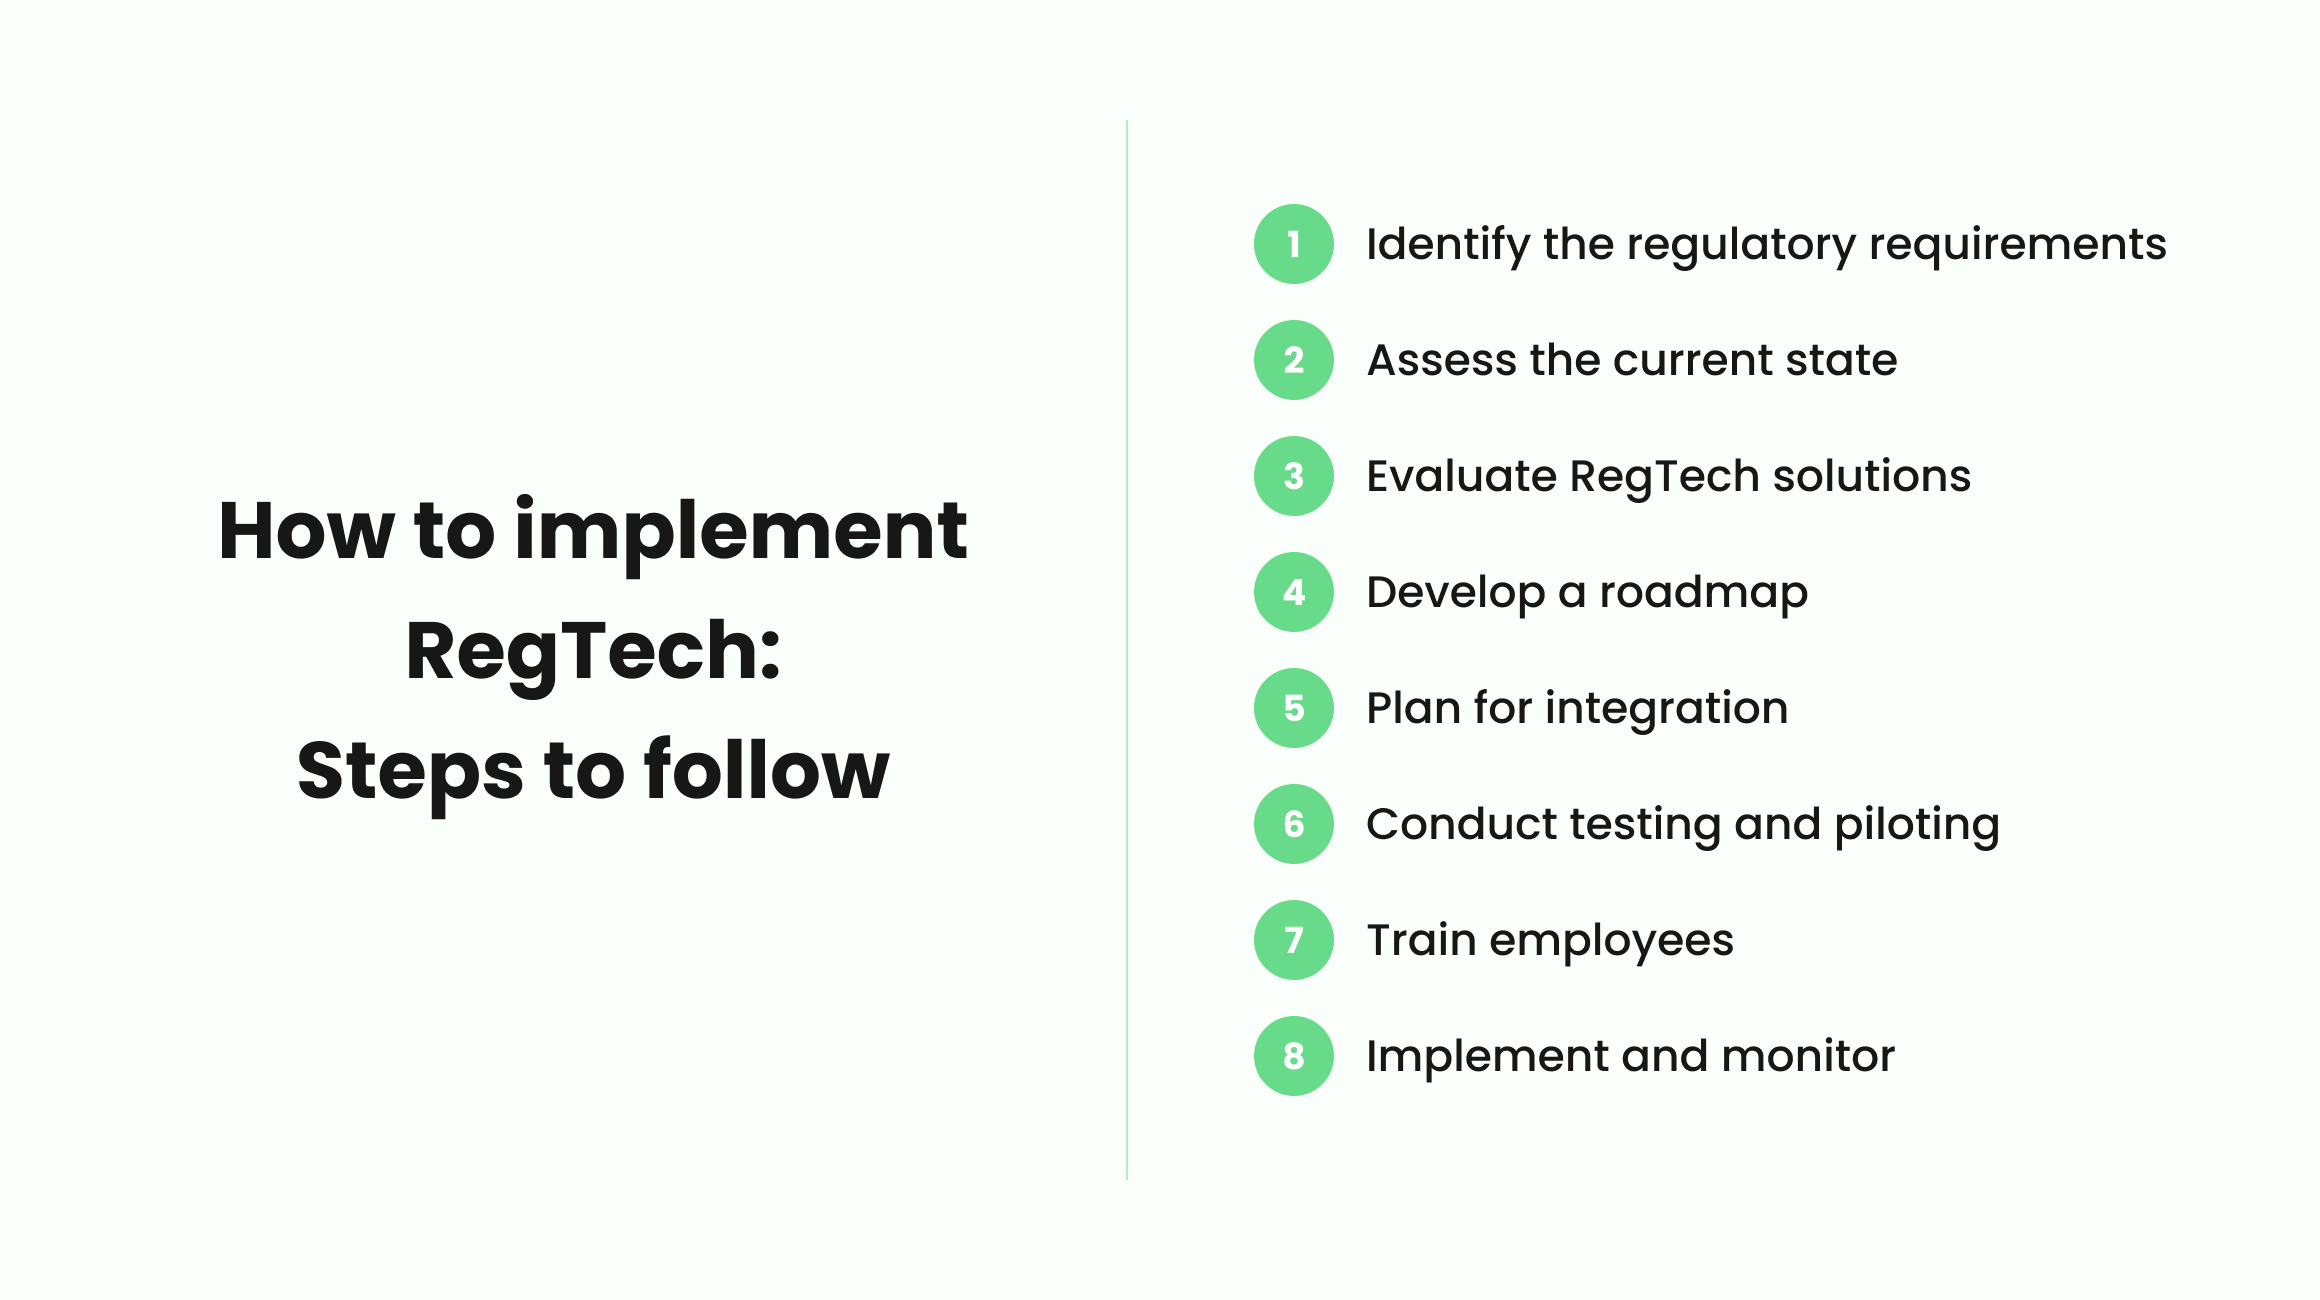 The RegTech Implementation Process